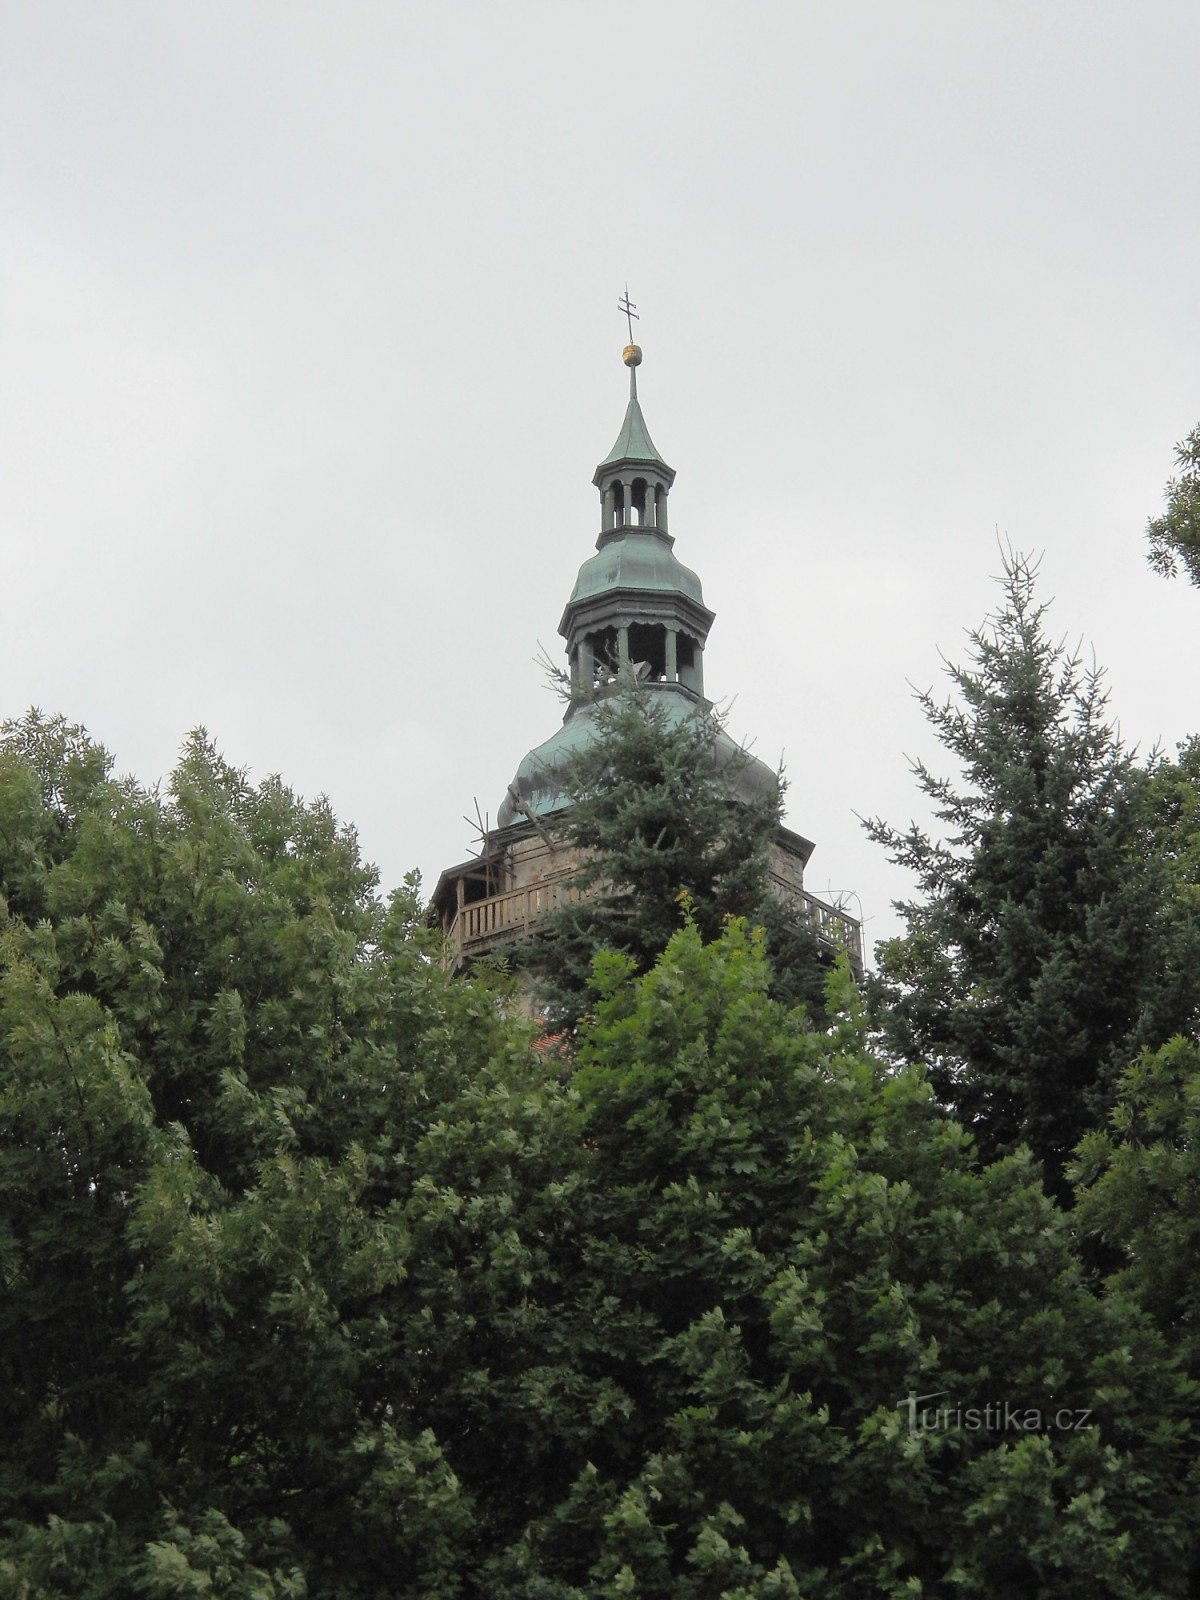 Kościół św. Jerzy